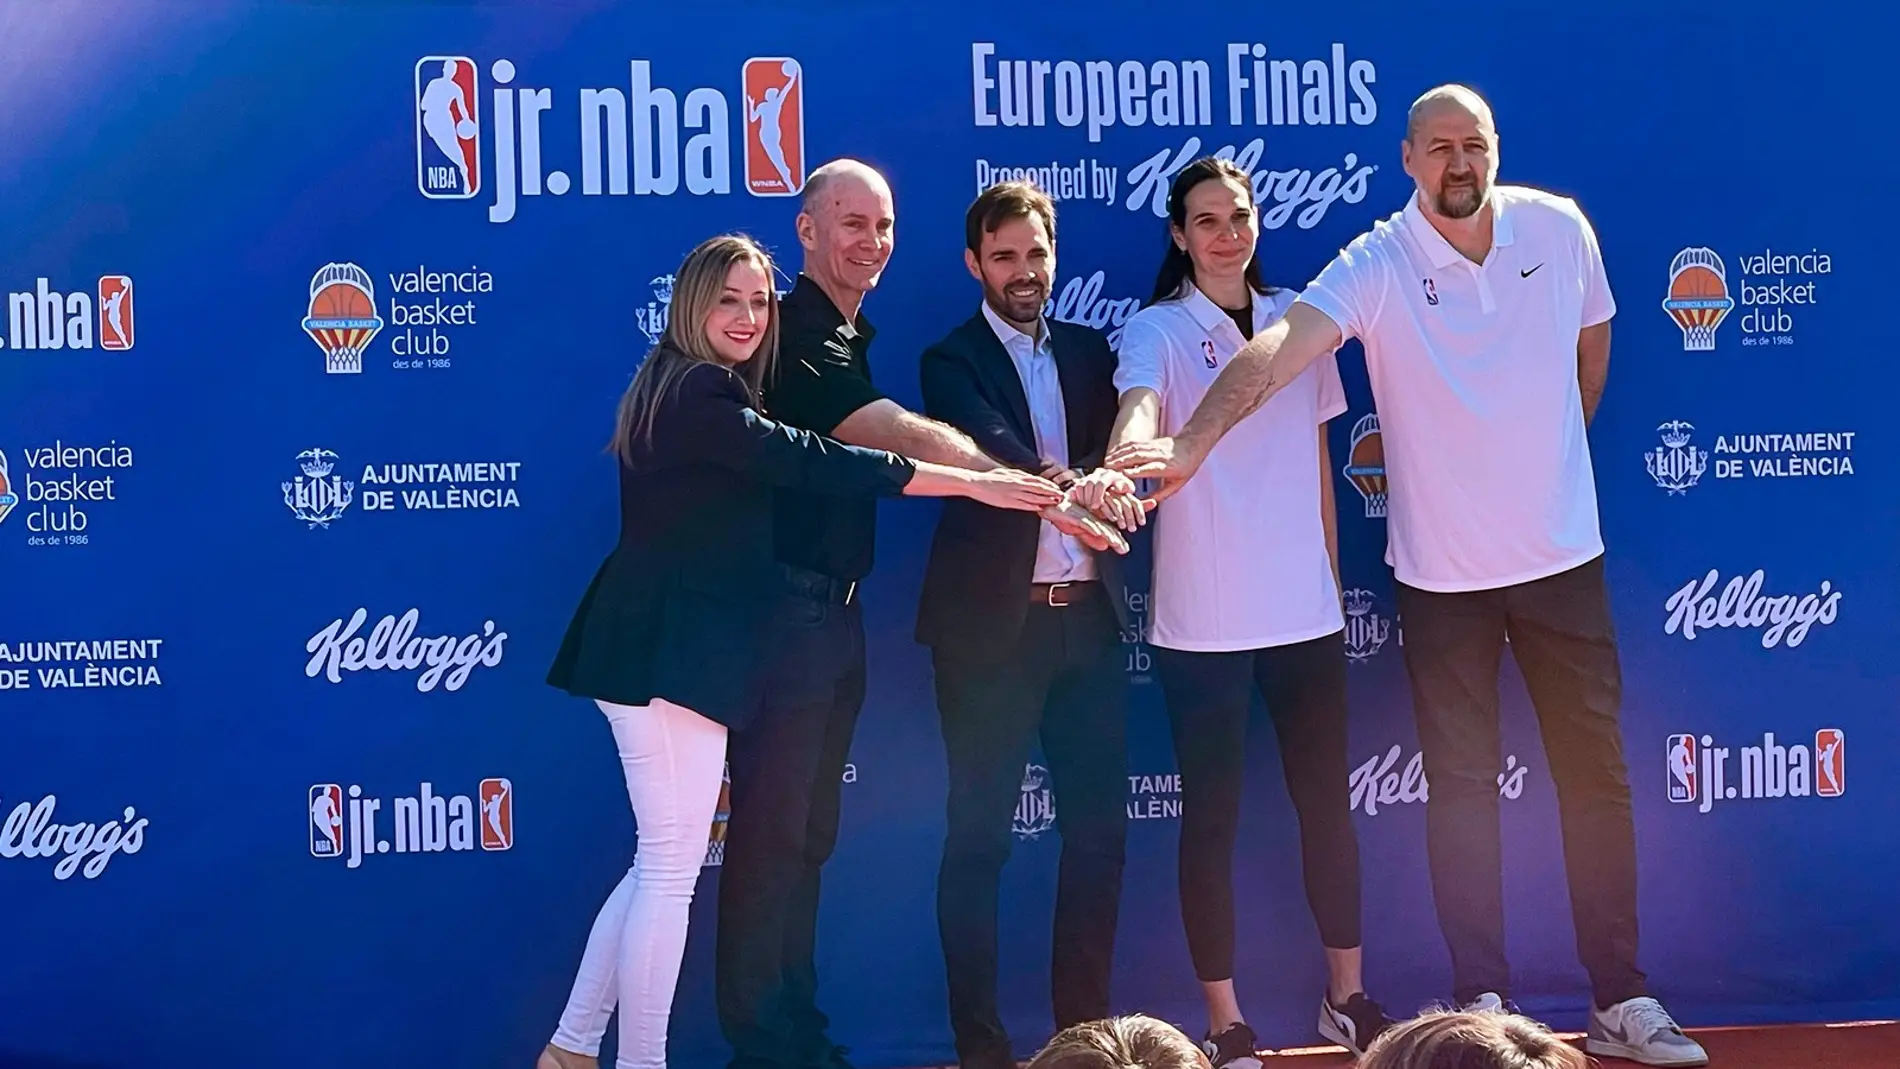 La NBA, el Ayuntamiento de Valencia y Valencia Basket Club anuncian el segundo torneo JR. NBA European Finals